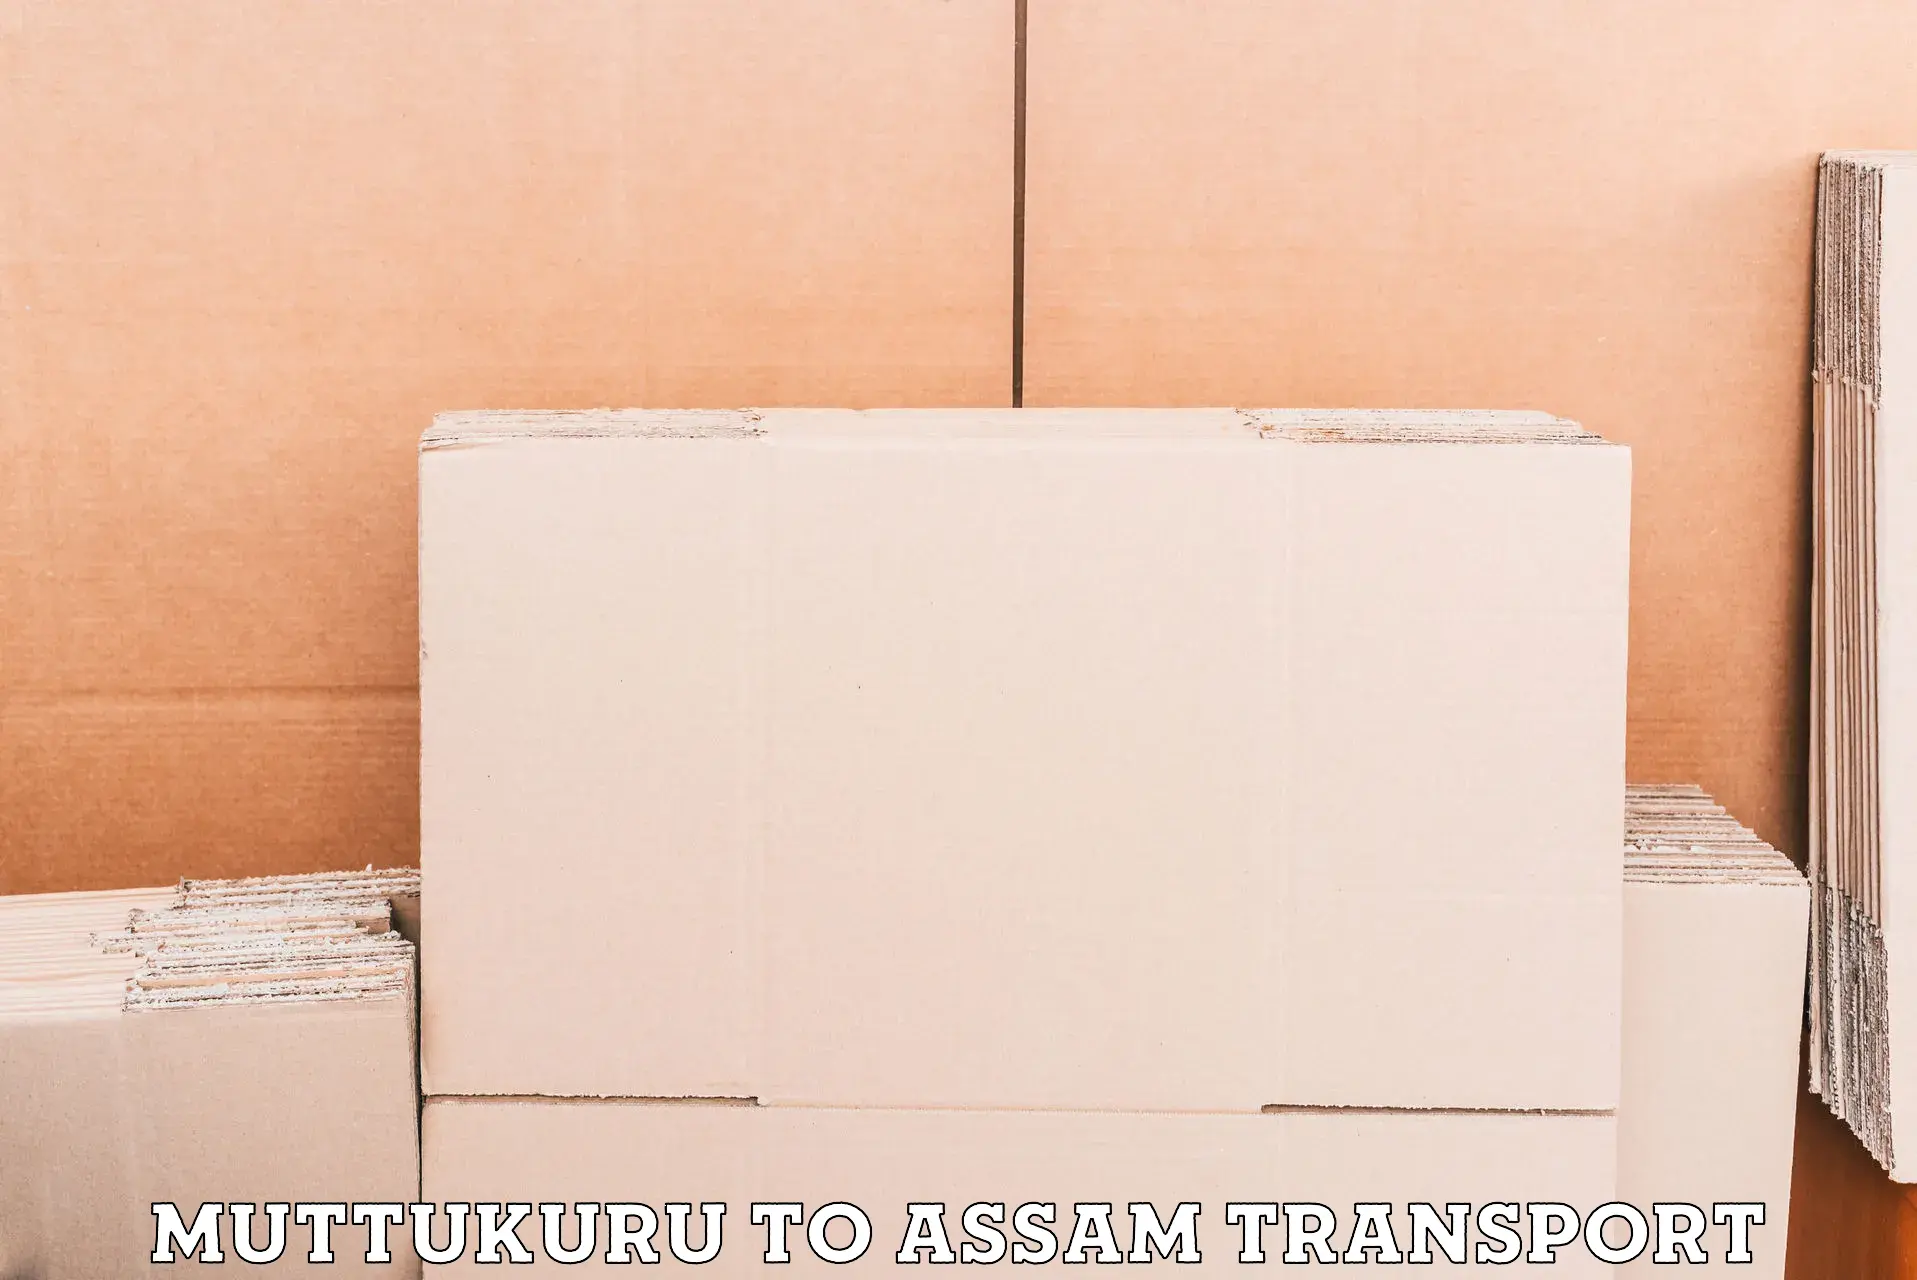 International cargo transportation services Muttukuru to Assam